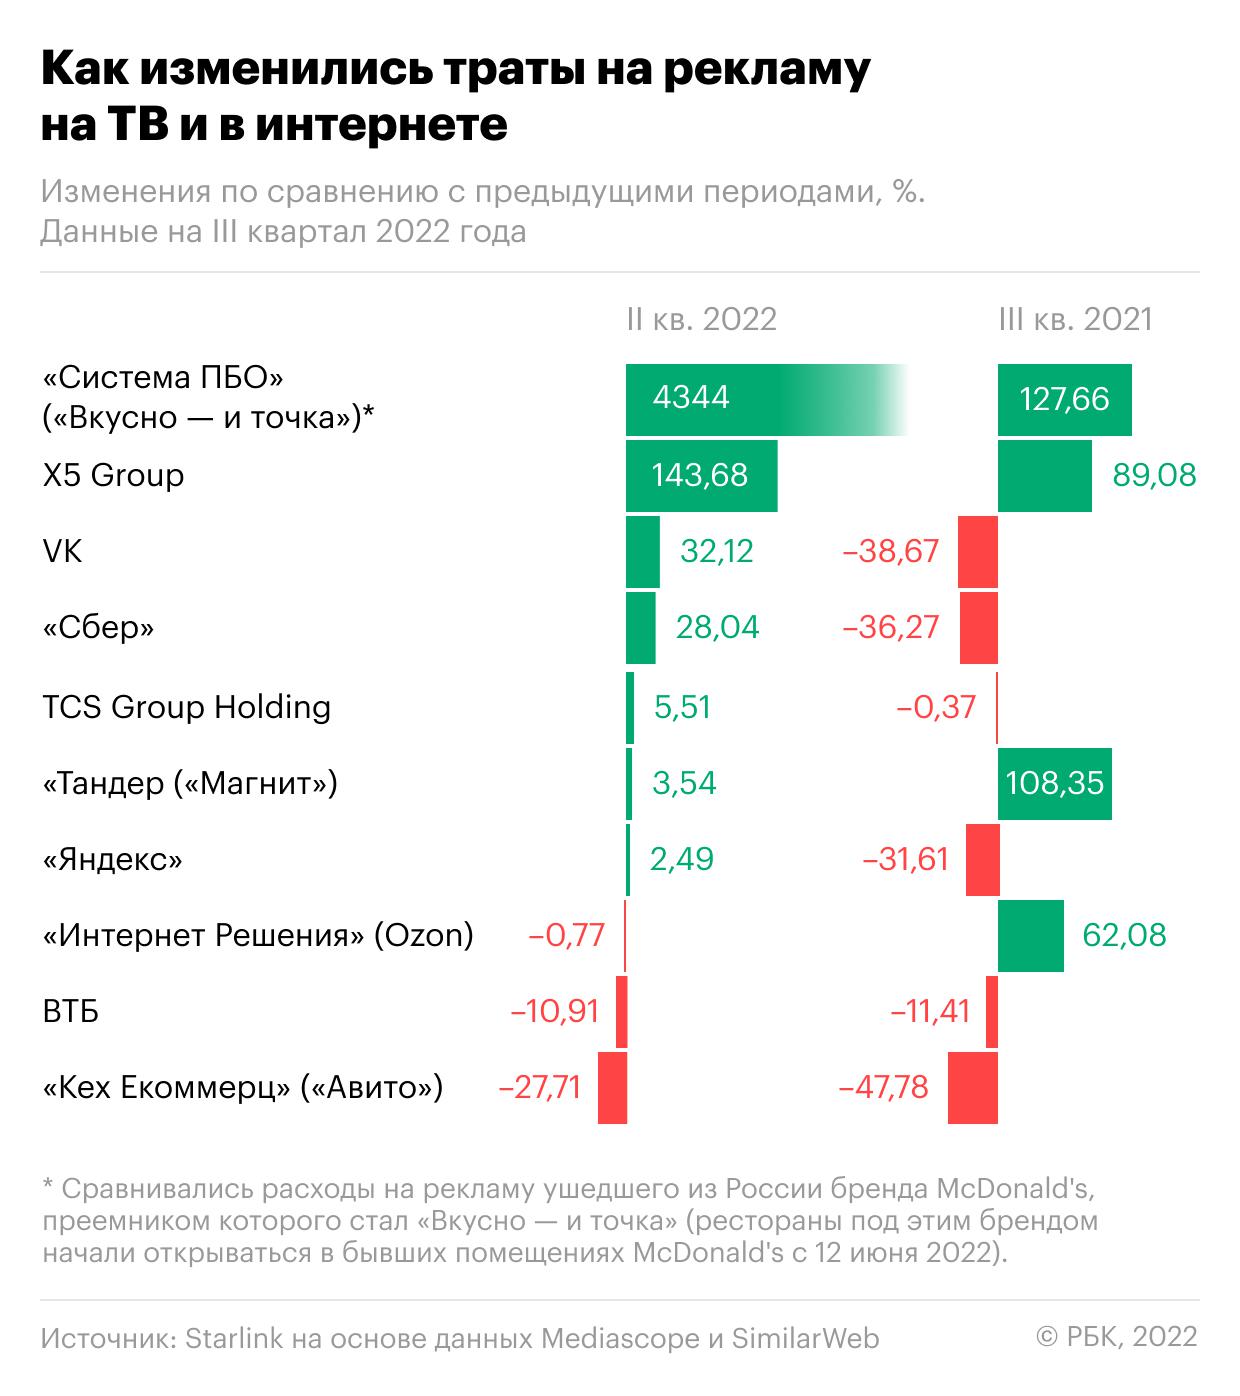 Samsung и Alibaba выпали из топа крупнейших рекламодателей России